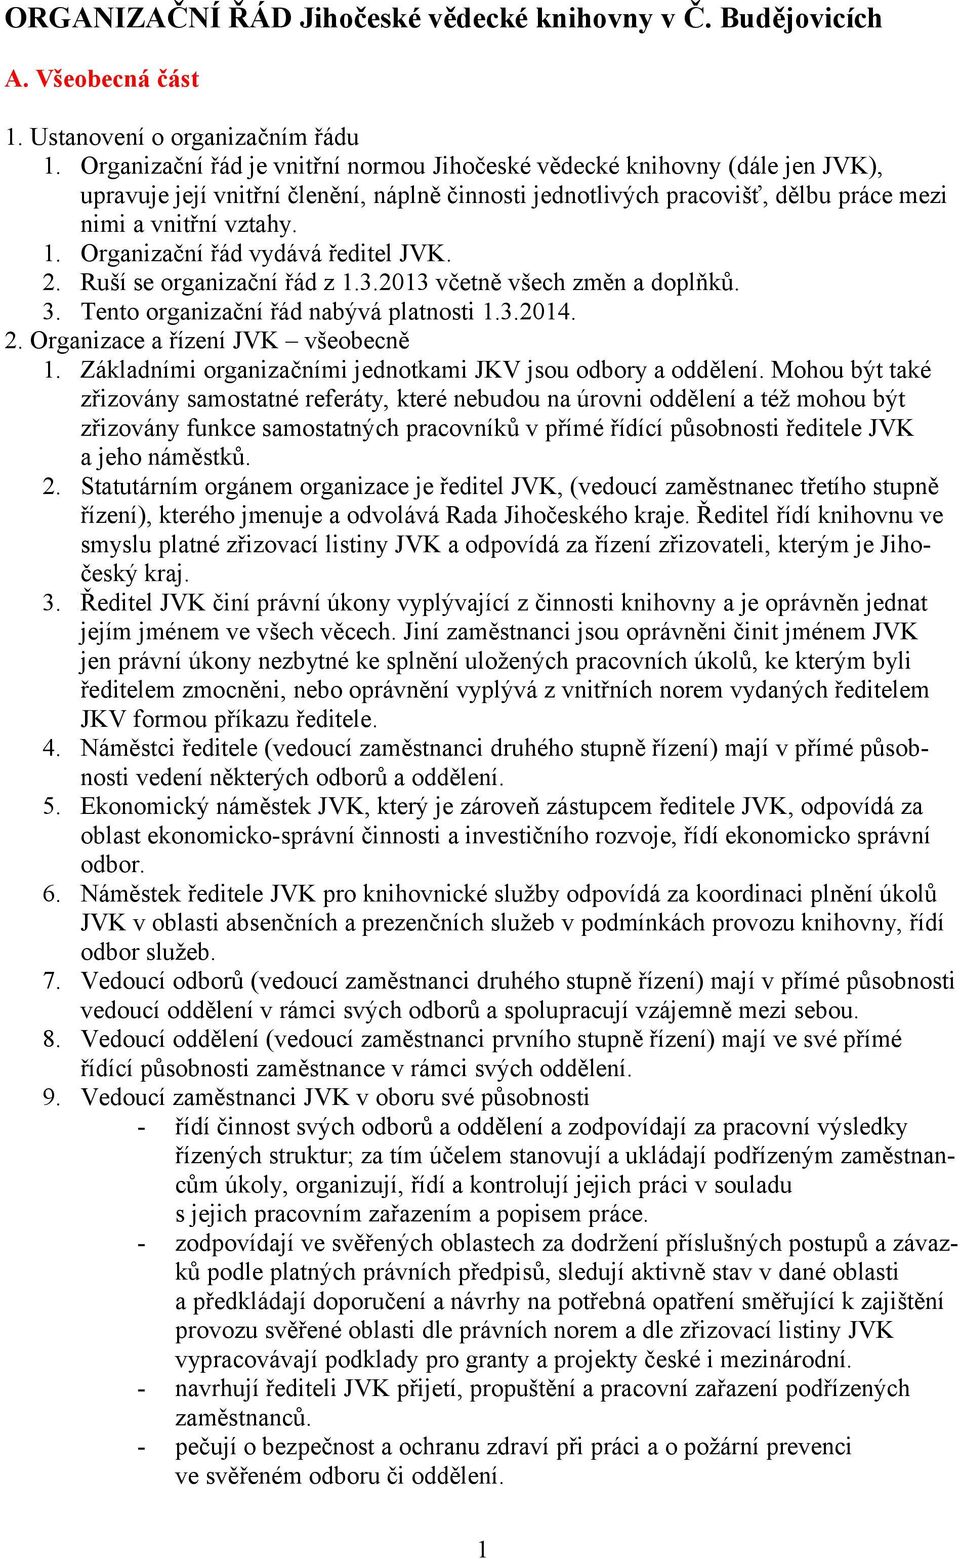 Organizační řád vydává ředitel JVK. 2. Ruší se organizační řád z 1.3.2013 včetně všech změn a doplňků. 3. Tento organizační řád nabývá platnosti 1.3.2014. 2. Organizace a řízení JVK všeobecně 1.